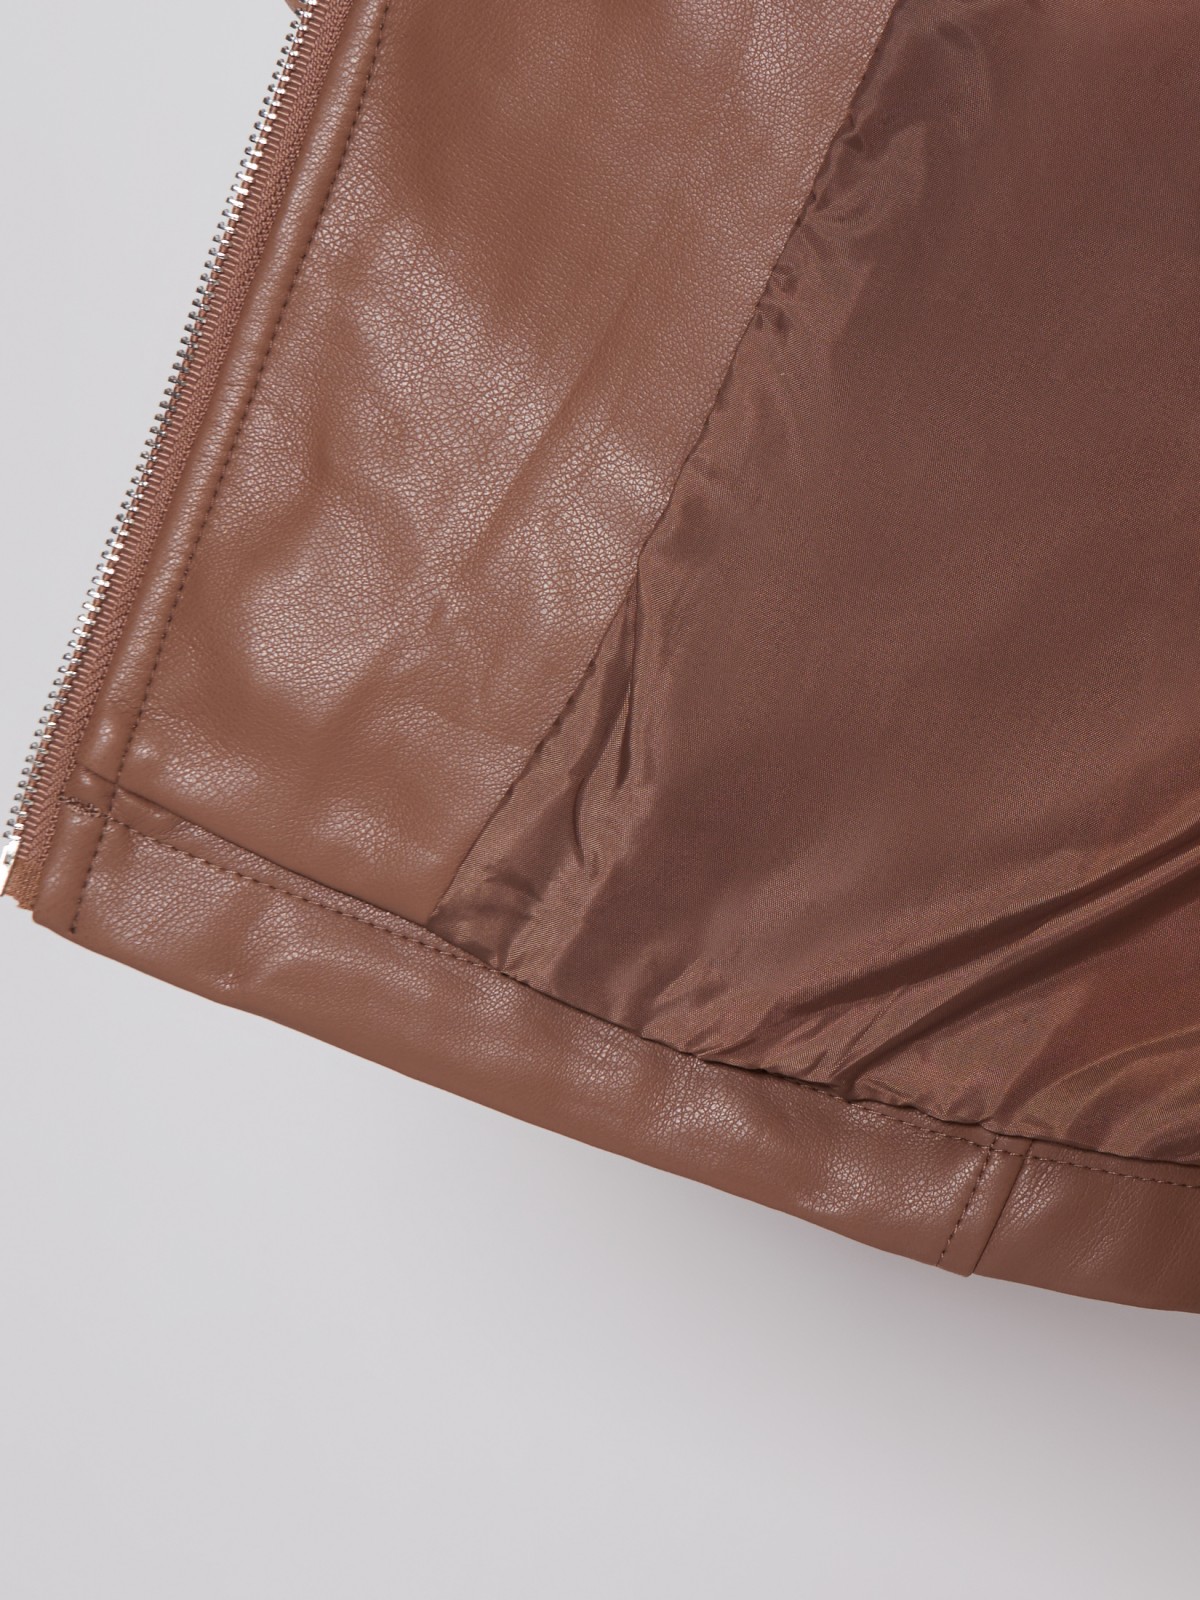 Кожаная куртка-косуха zolla 023215602054, цвет коричневый, размер XS - фото 6